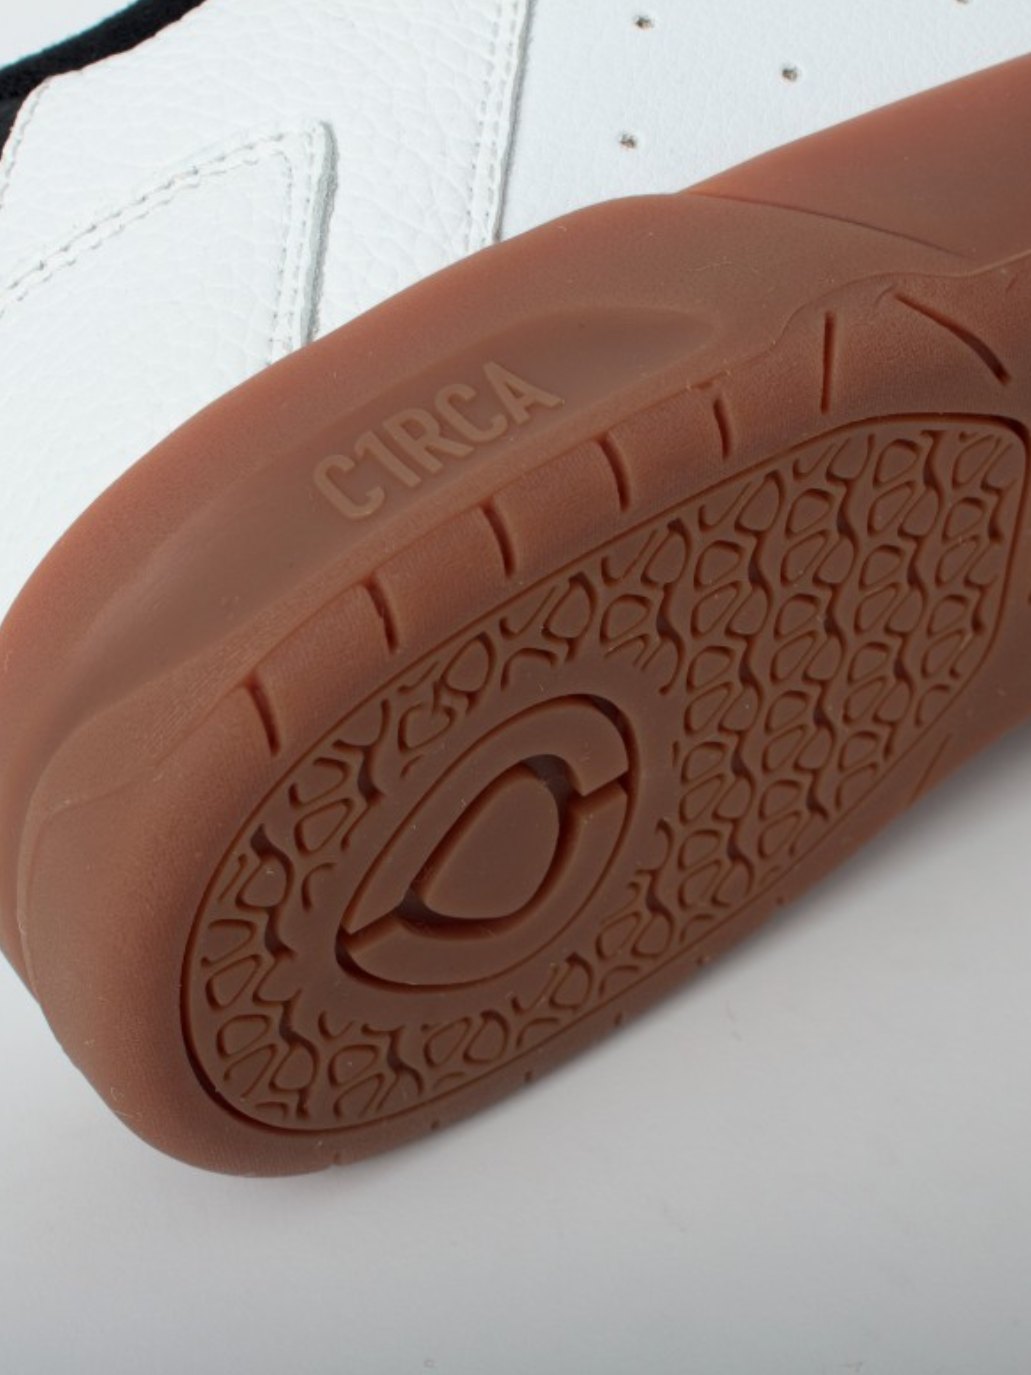 Circa 805 Skateschuhe in Weiß/Gummi | Meistverkaufte Produkte | Neue Produkte | Neueste Produkte | Sammlung_Zalando | Schuhwerk | Turnschuhe | surfdevils.com